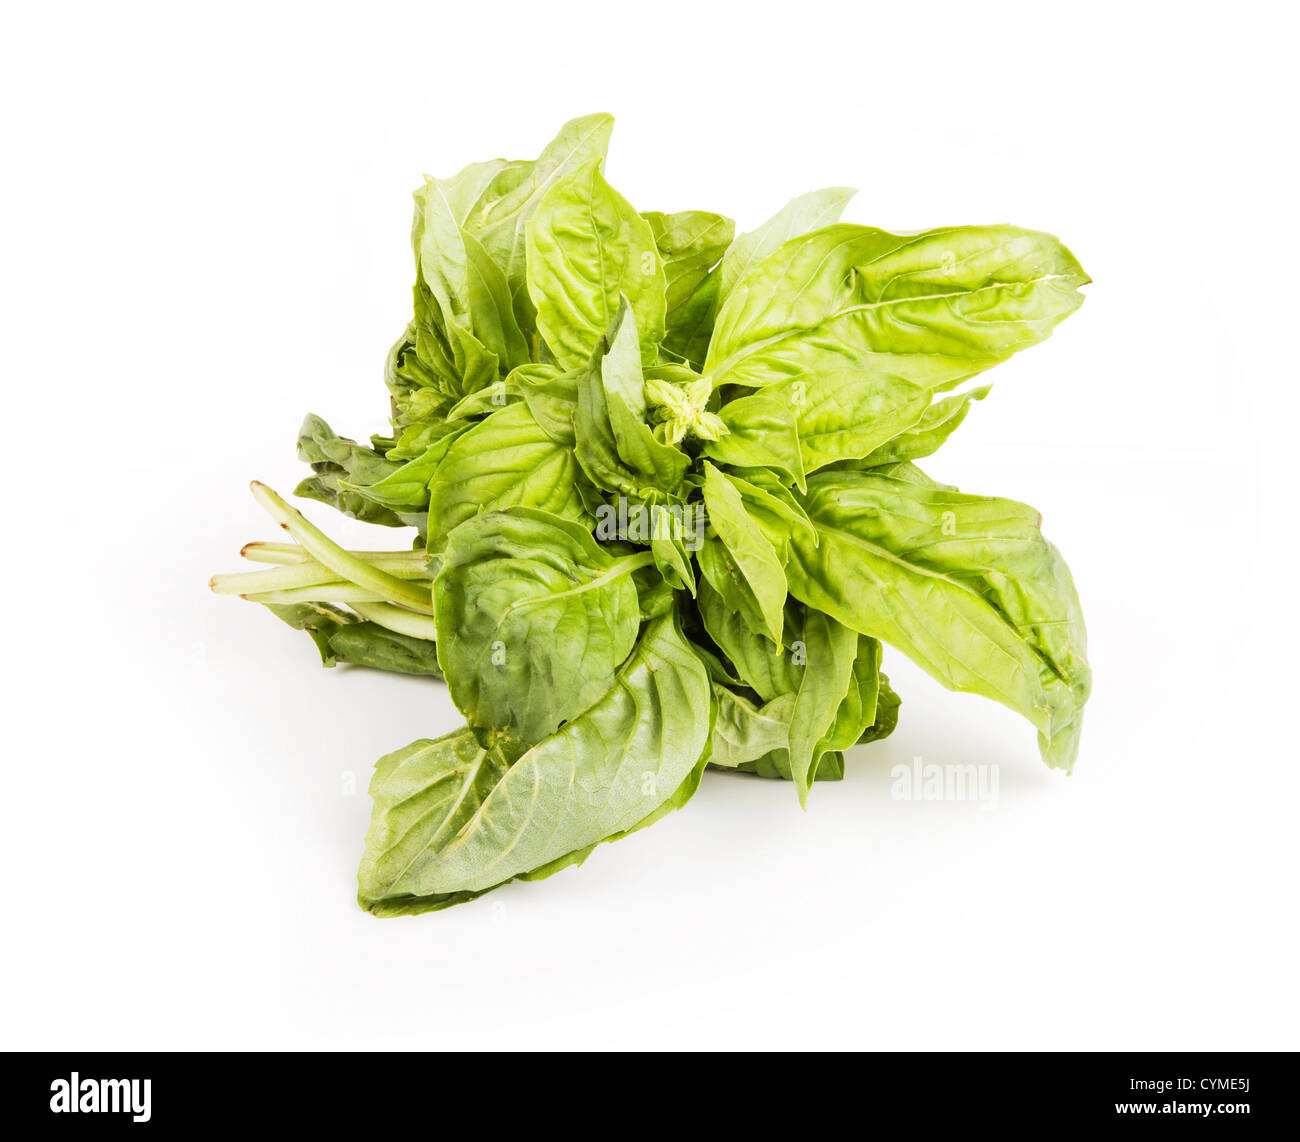 Petit paquet de légumes verts à feuilles de basilic Banque D'Images